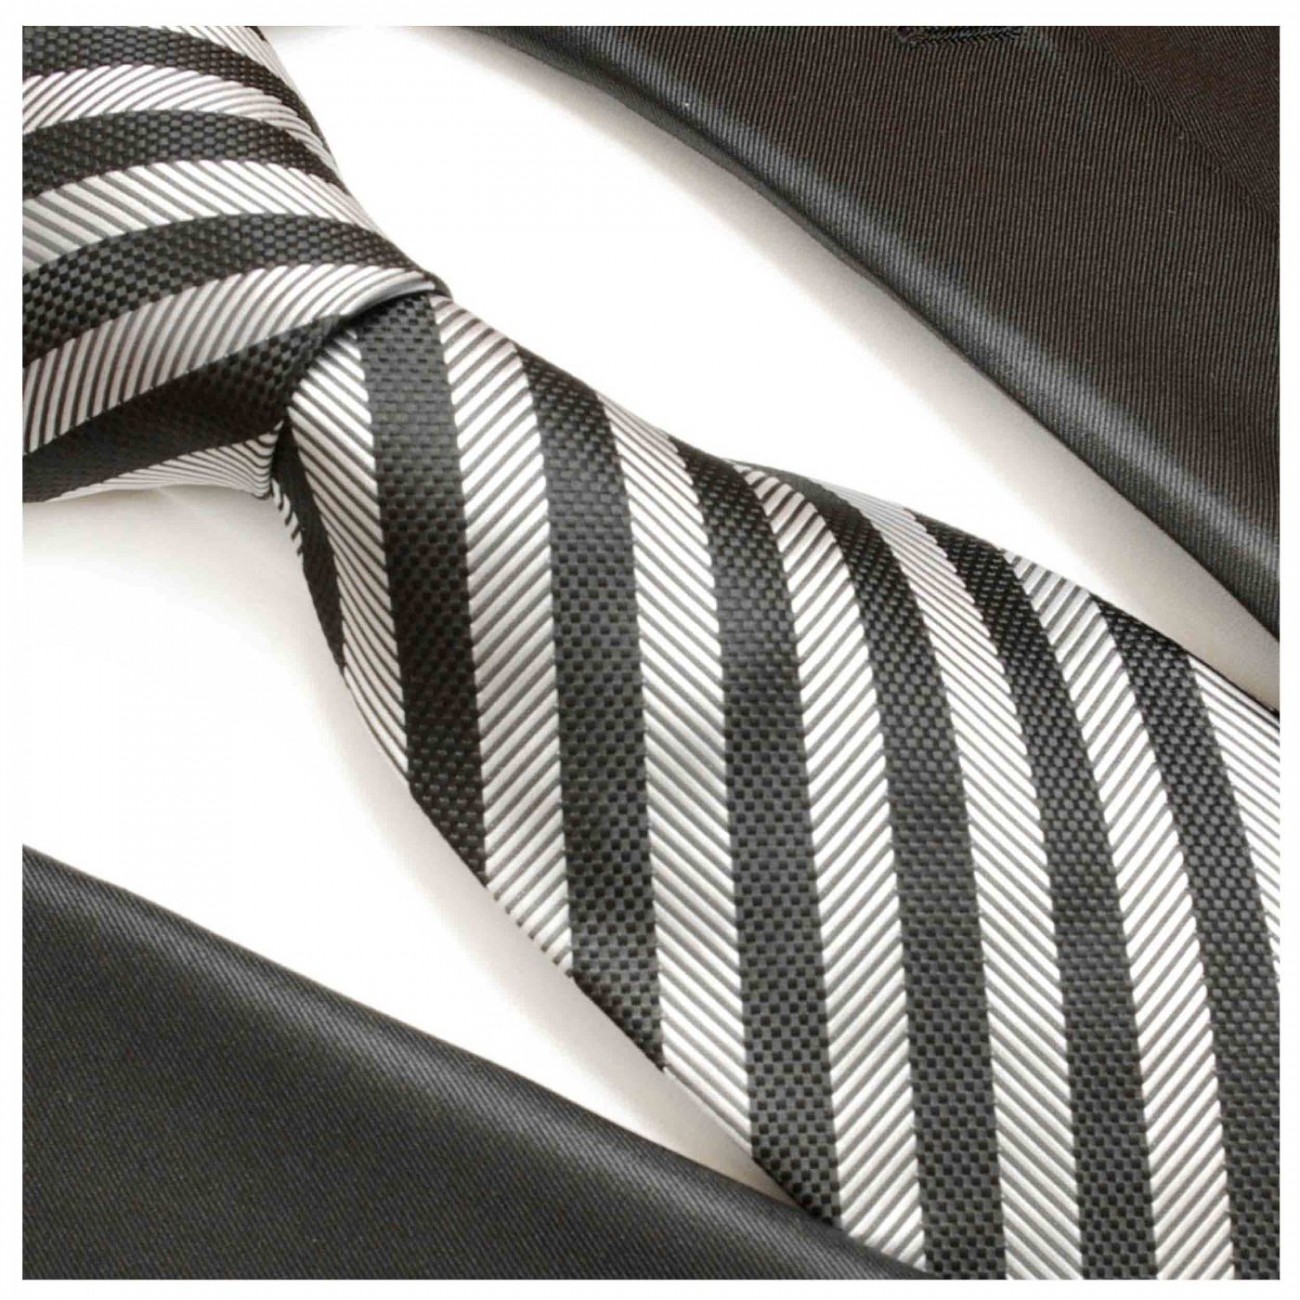 Necktie silver gray black striped mens tie